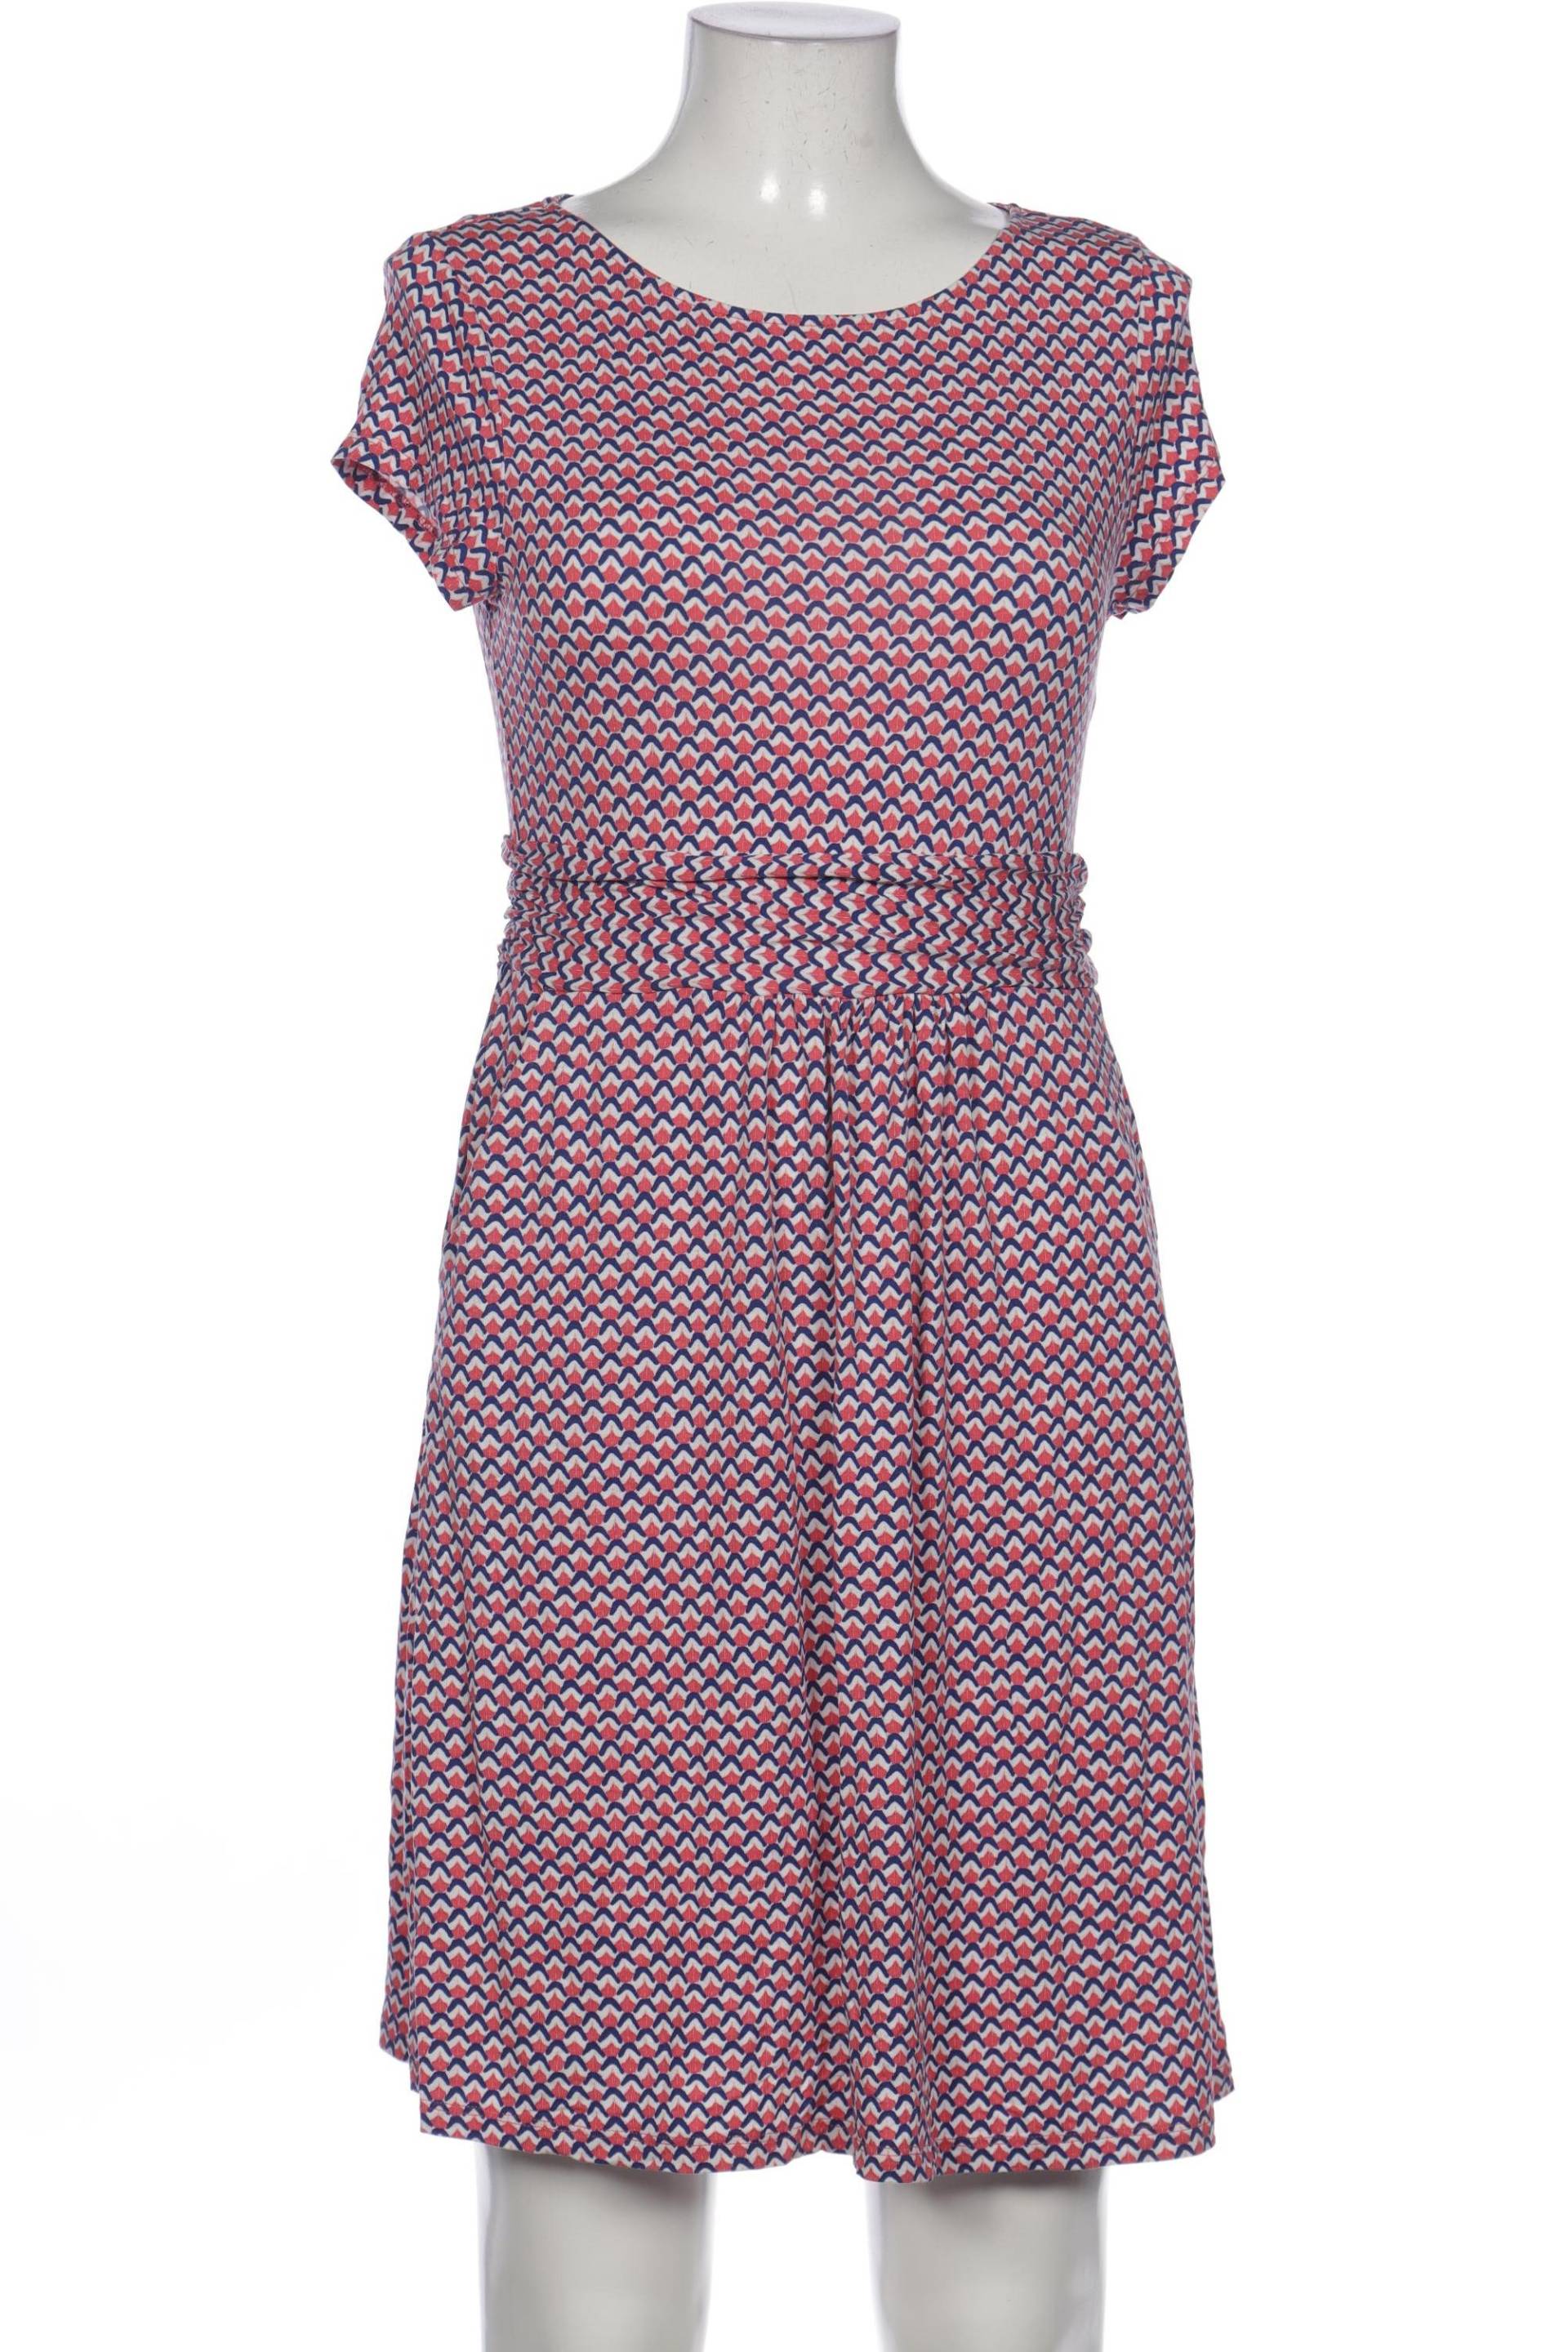 Boden Damen Kleid, pink, Gr. 38 von Boden